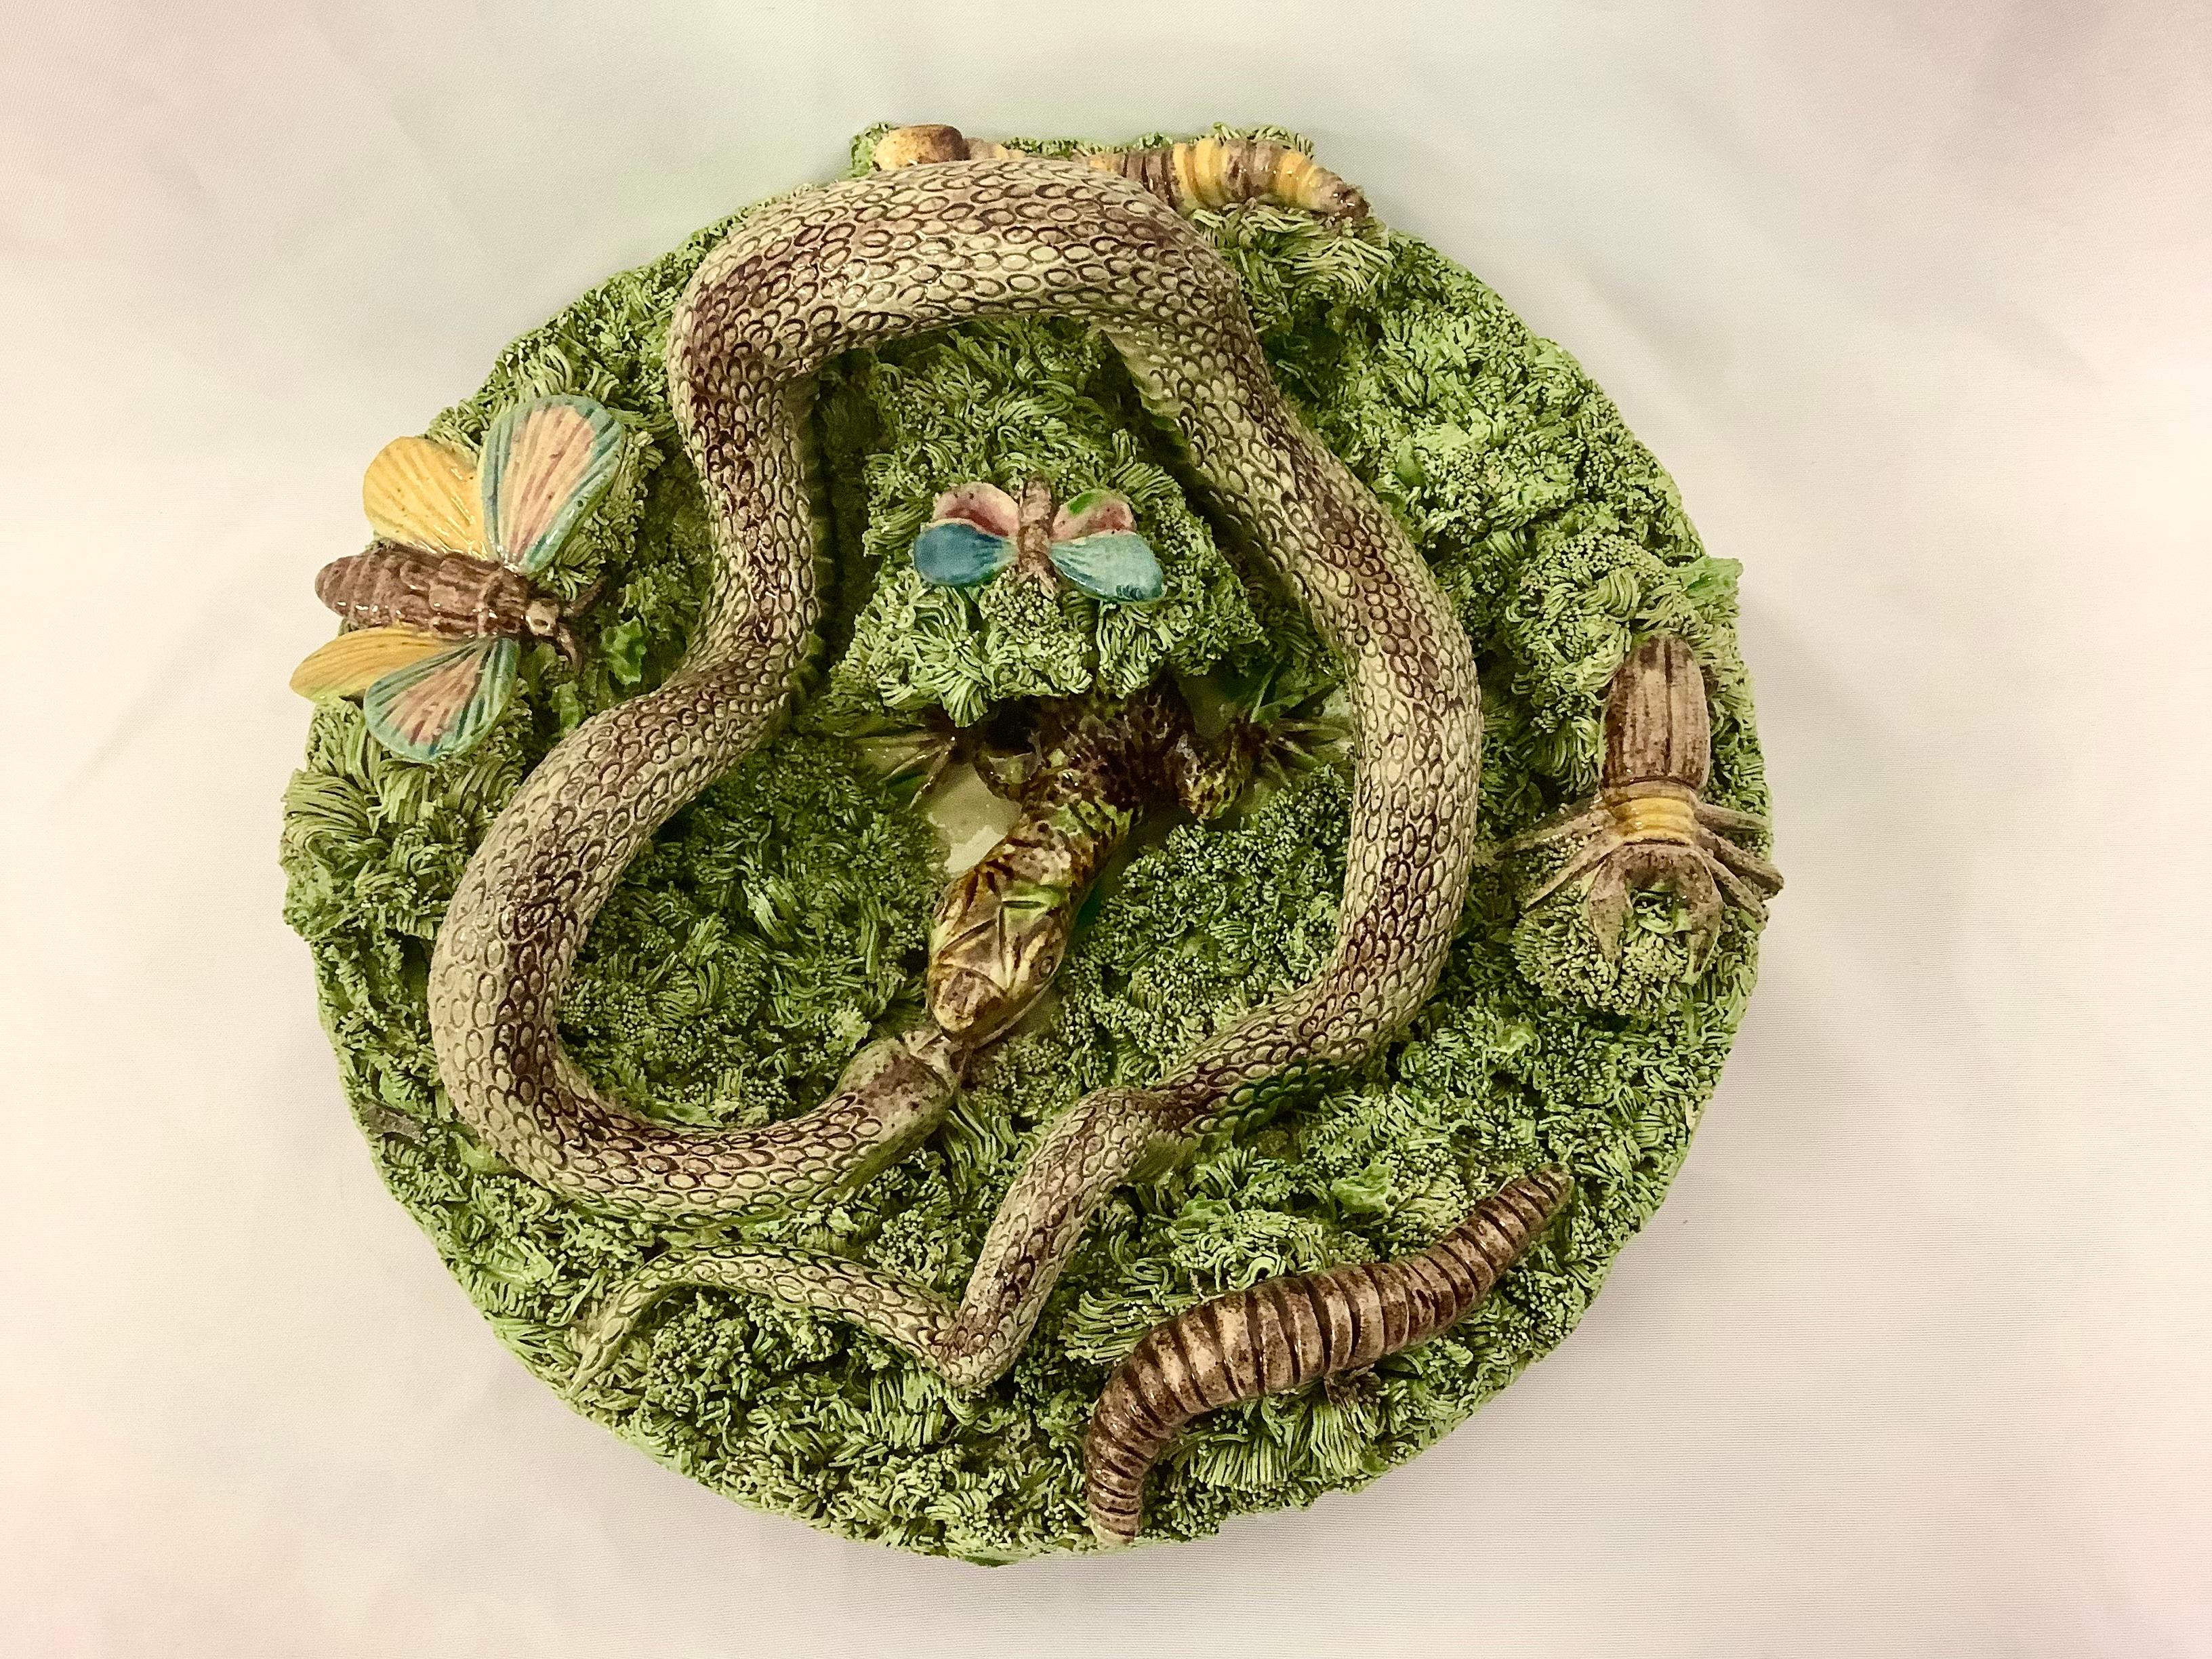 Assiette de style Palissy en majolique portugaise du 19e siècle avec un grand serpent et un grand lézard fouillant dans une touffe de mousse, signée Jose Alves Cunha (Caldas da Rainha) avec un serpent, un ver, une chenille, un papillon, une